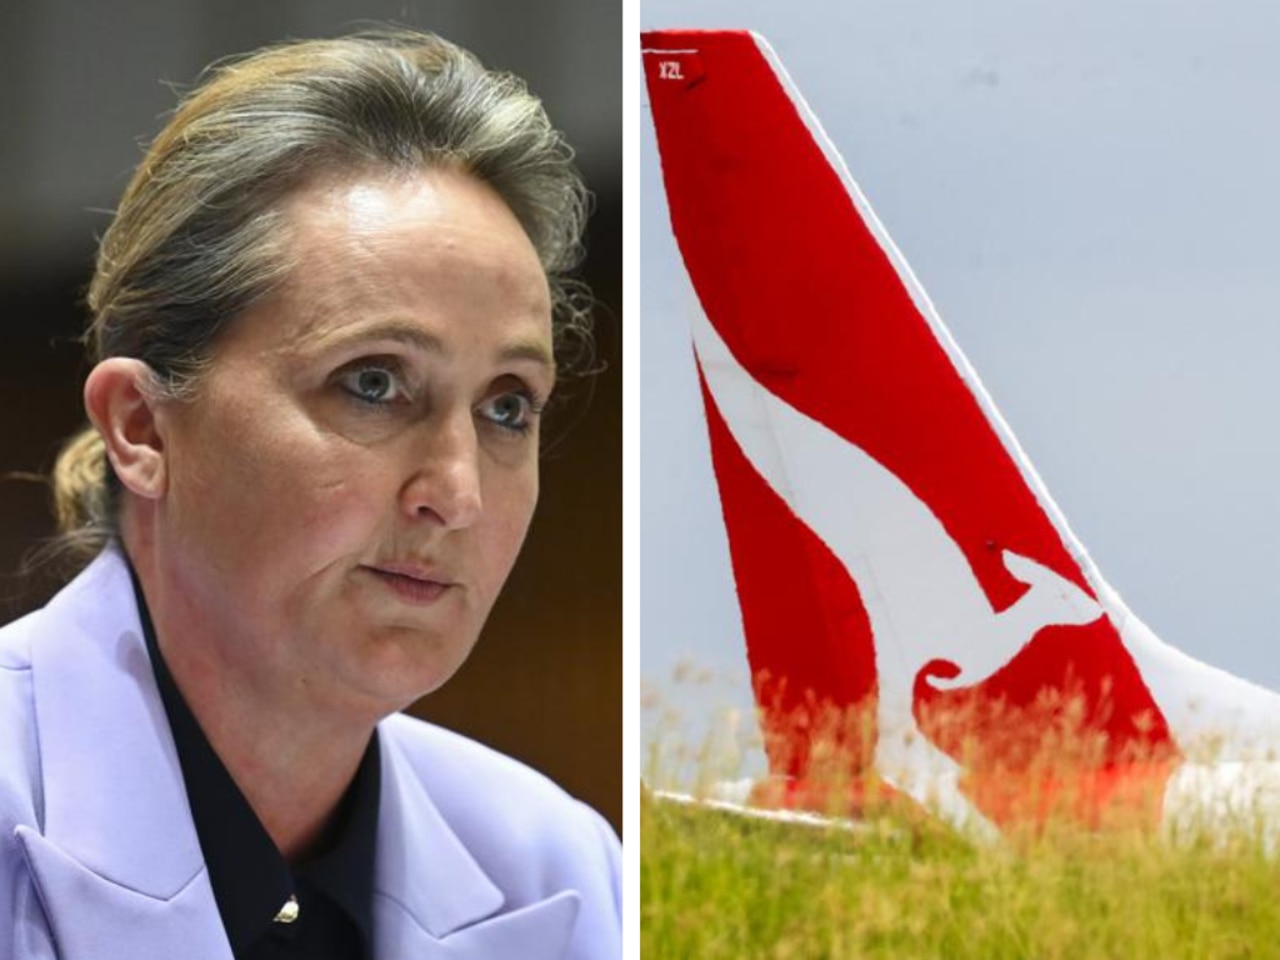 ‘Cutthroat’: Qantas slammed after collapse